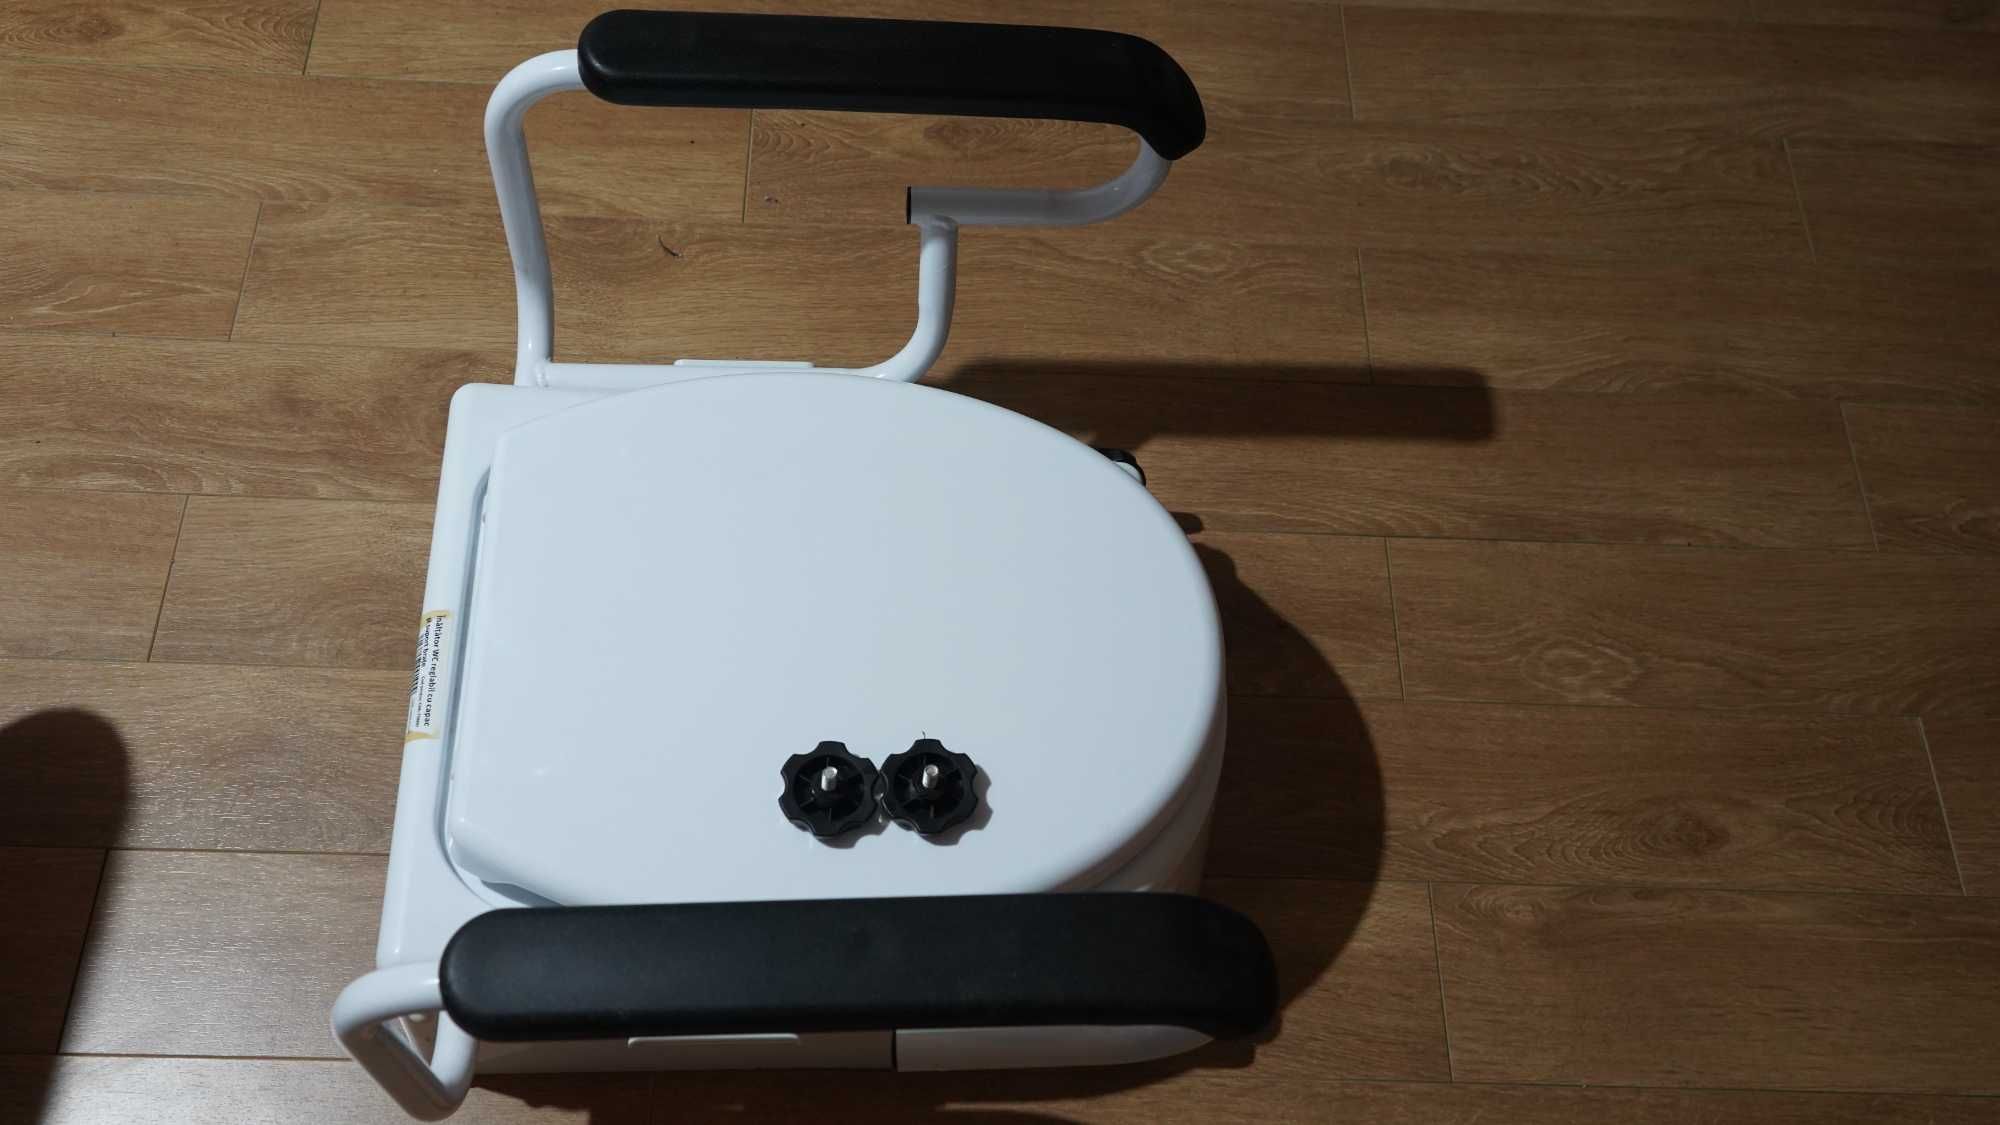 Inaltator de WC pentru varstnici/cu dezabilitati, model CMI-7060H